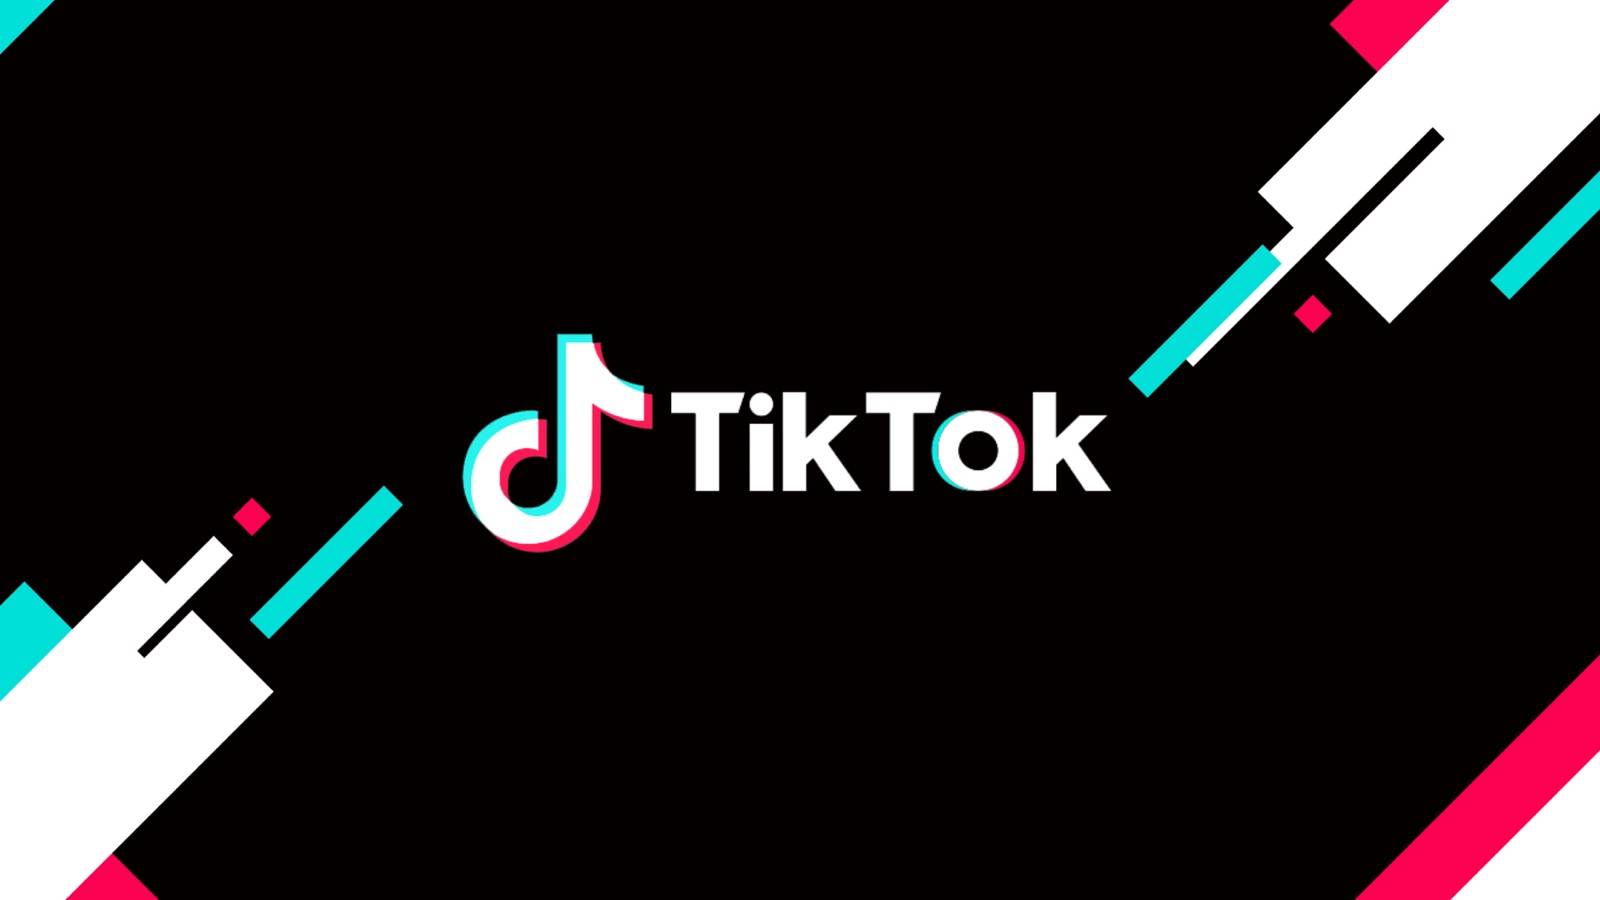 La mise à jour TikTok est disponible pour les téléphones, quoi de neuf ?